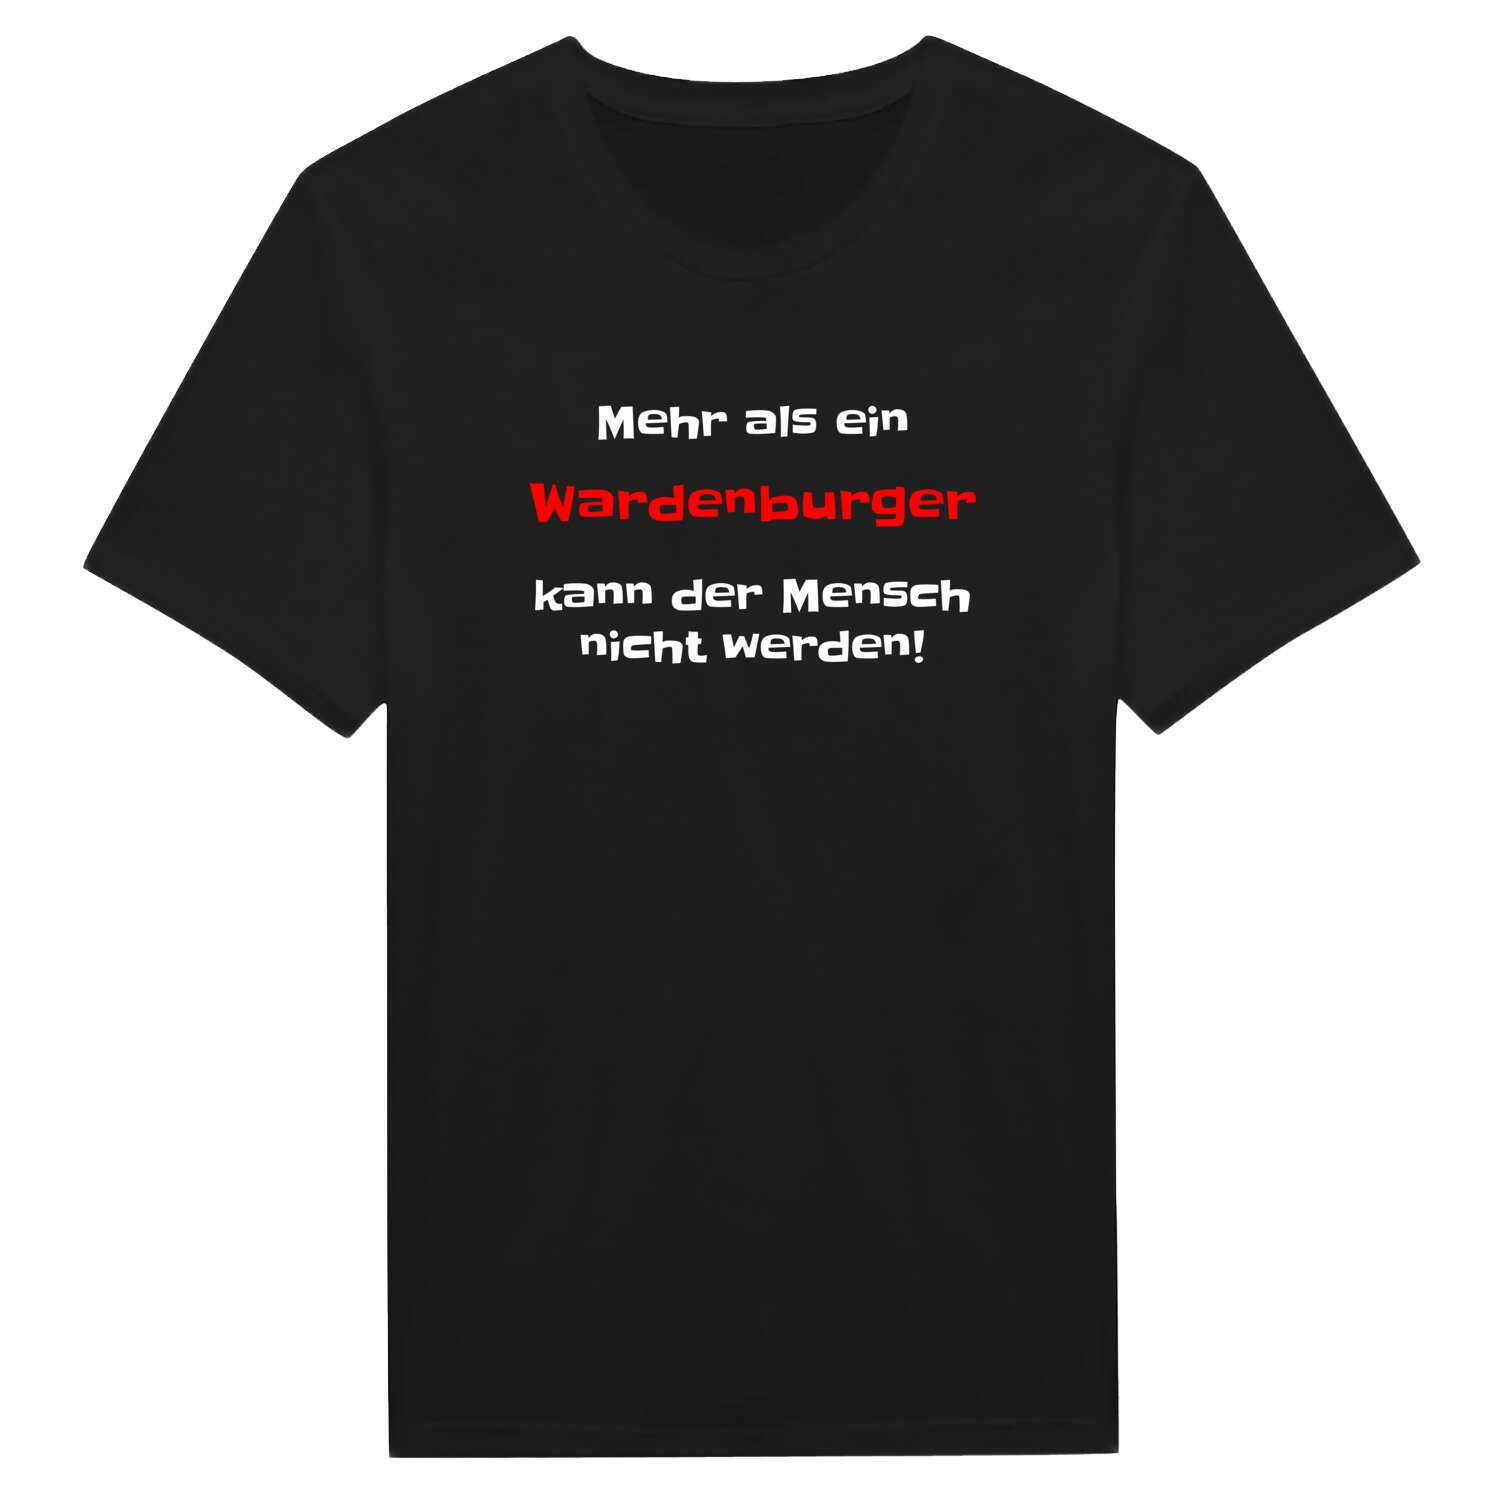 Wardenburg T-Shirt »Mehr als ein«